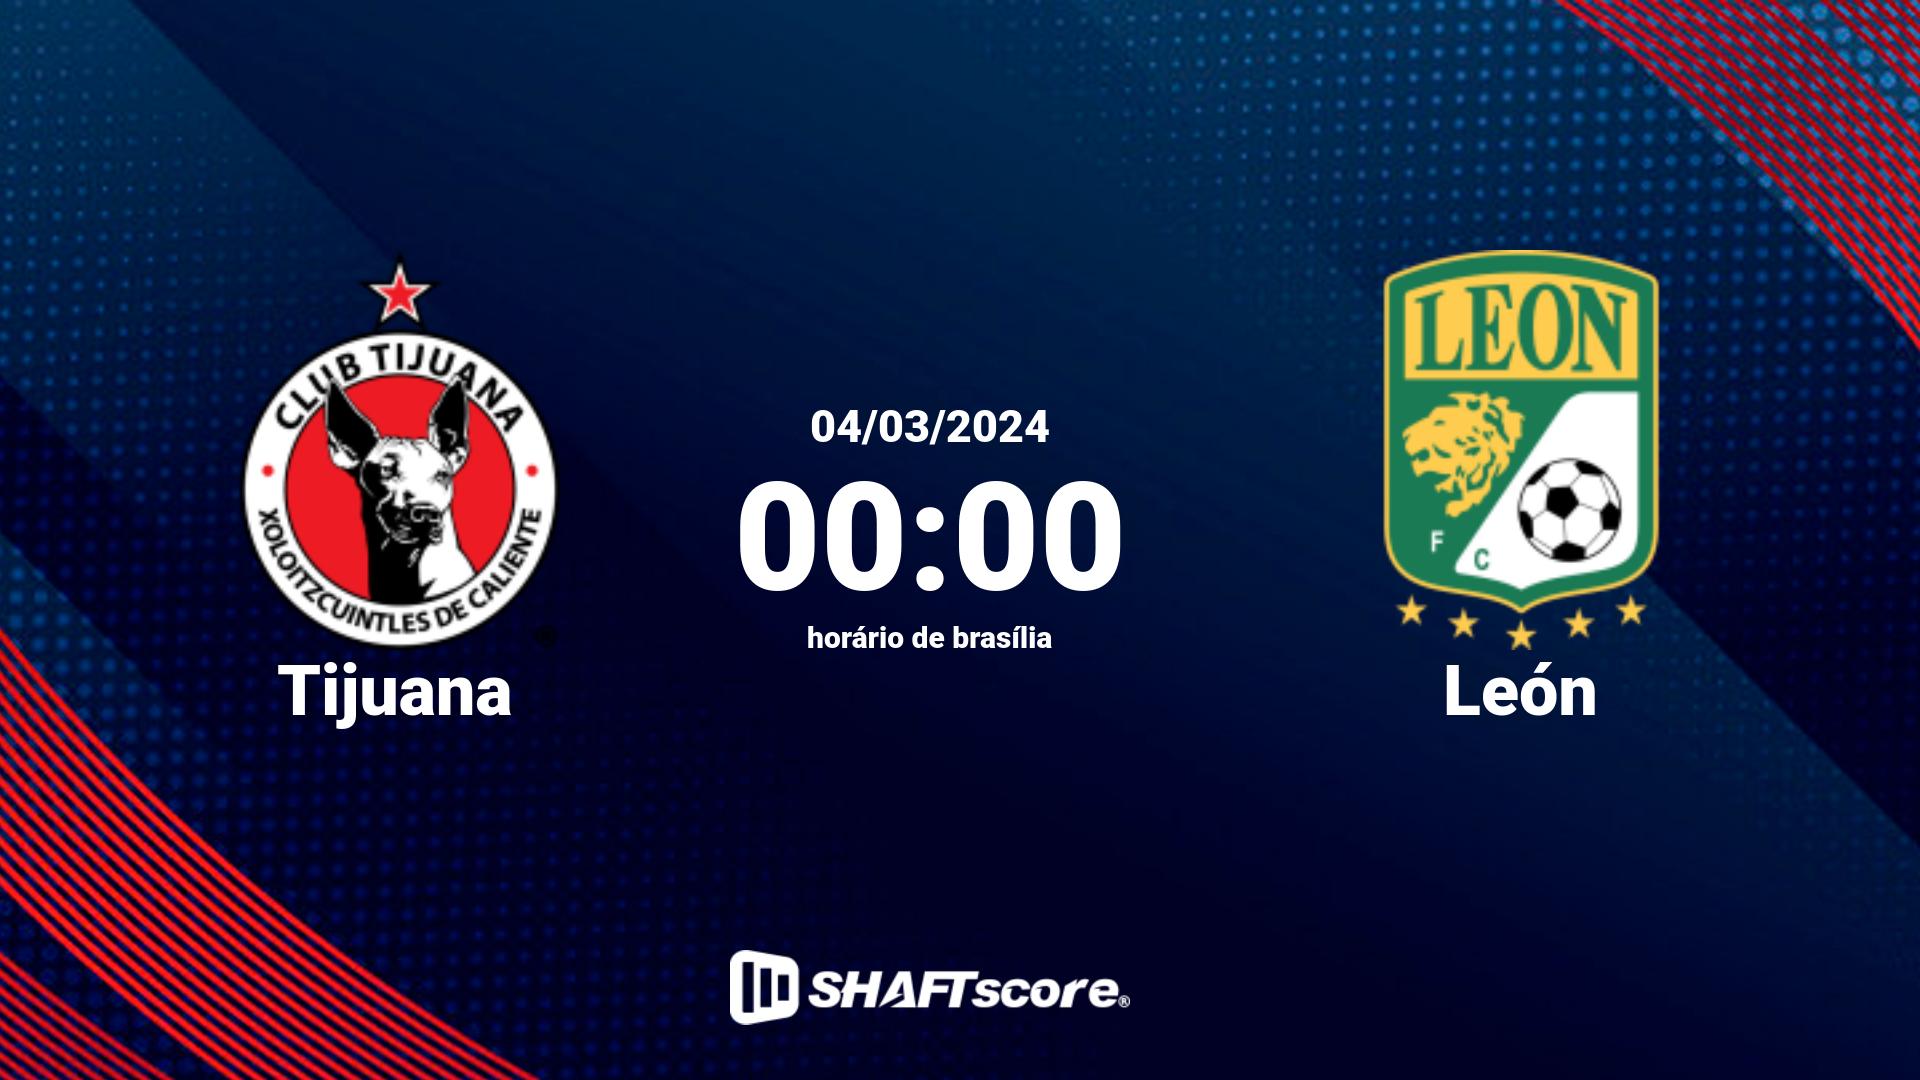 Estatísticas do jogo Tijuana vs León 04.03 00:00